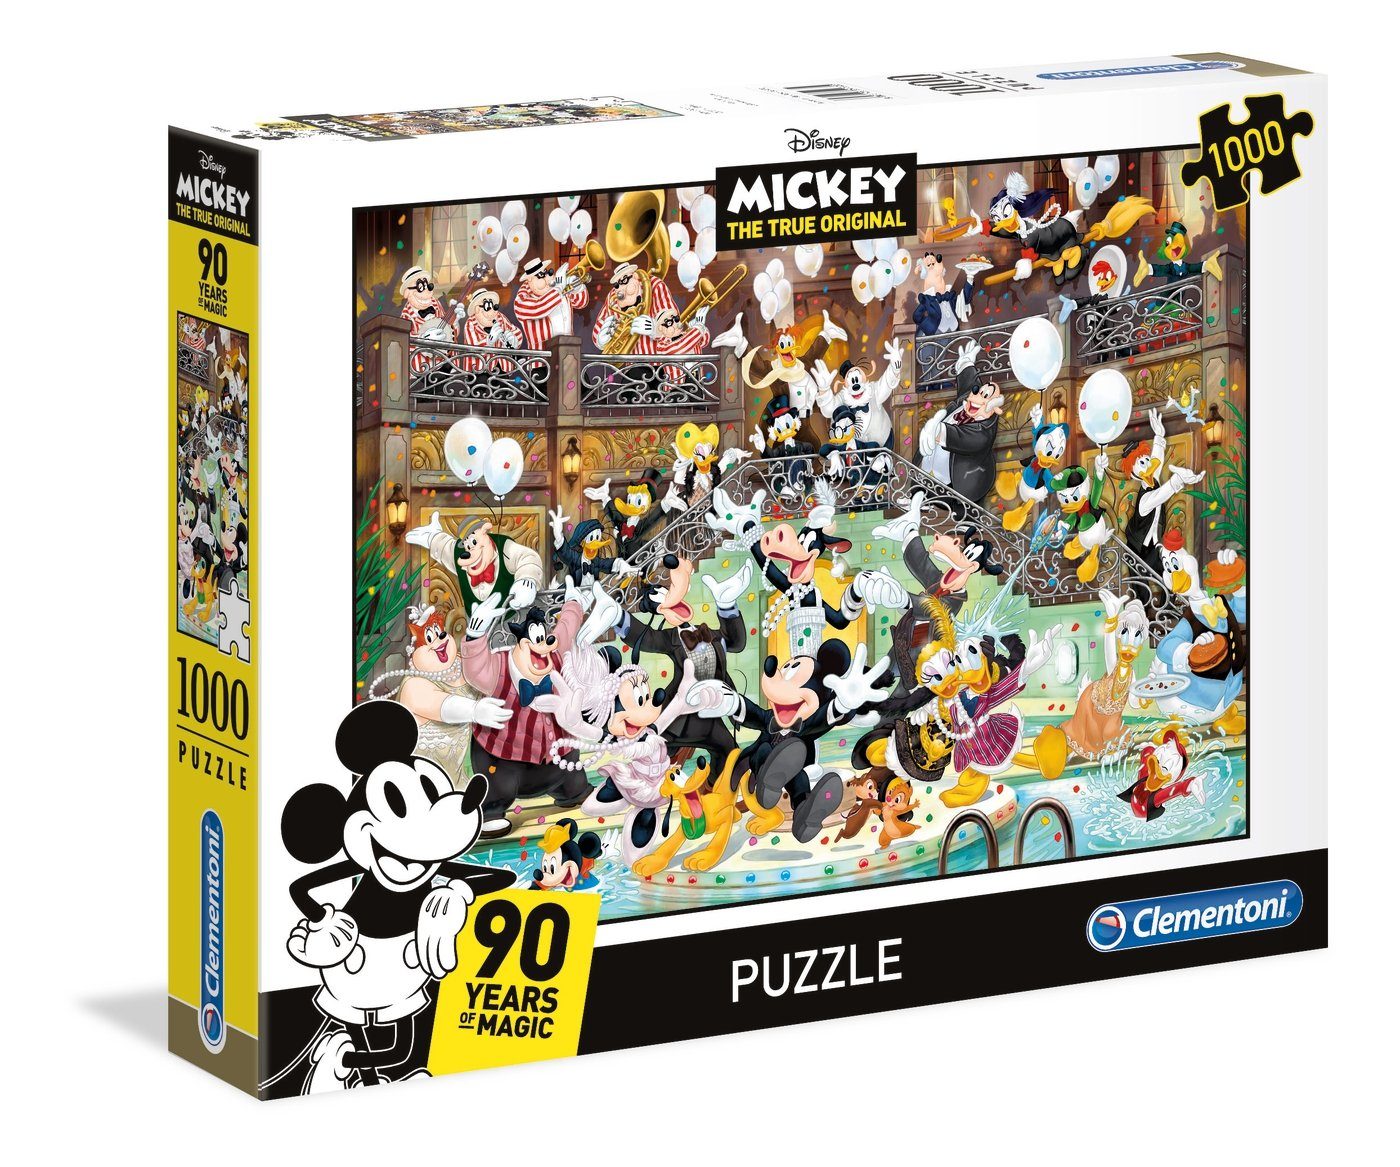 Clementoni® Puzzle 39472 Mickey 90 Jahre Celebration, 1000 Teile, 1000 Puzzleteile | Puzzle